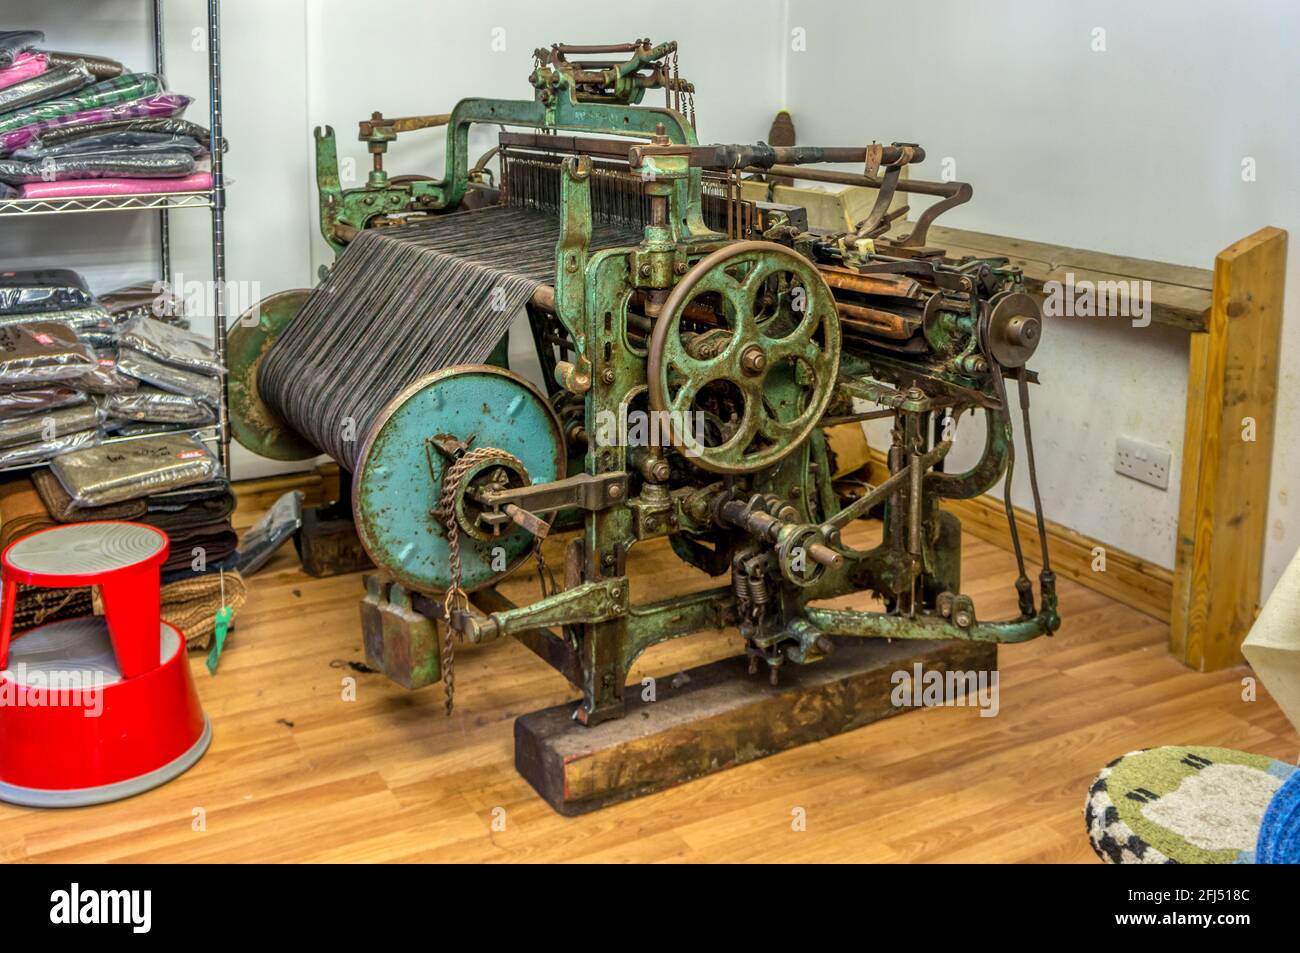 Hattersley domestic loom used to weave Harris tweed. Stock Photo